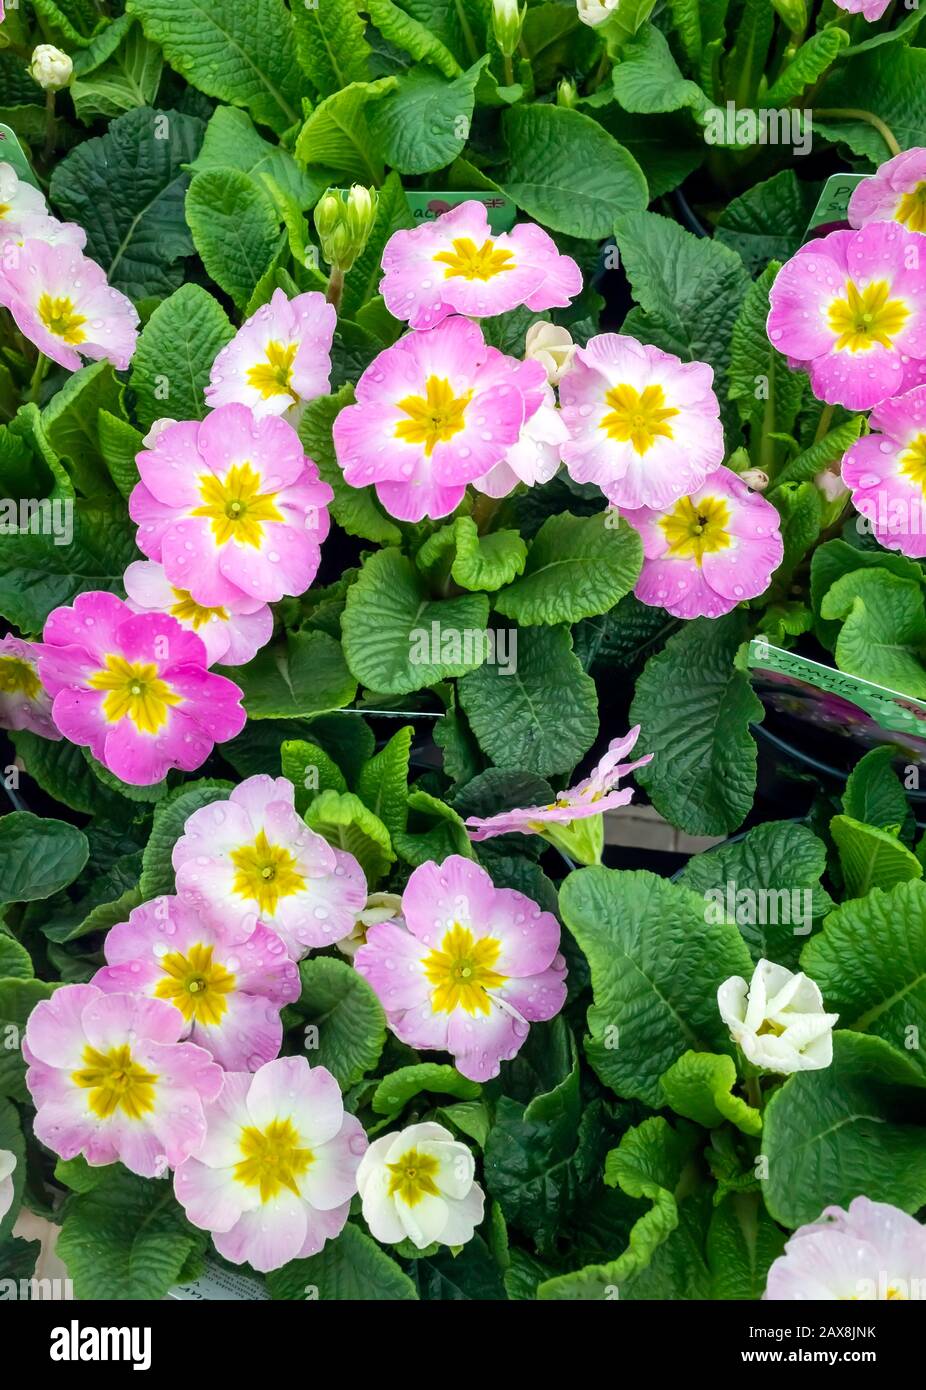 Primula variété de plantes acaulis Sweet 16 dans un centre de jardin pour la vente prêt pour la plantation de printemps Banque D'Images